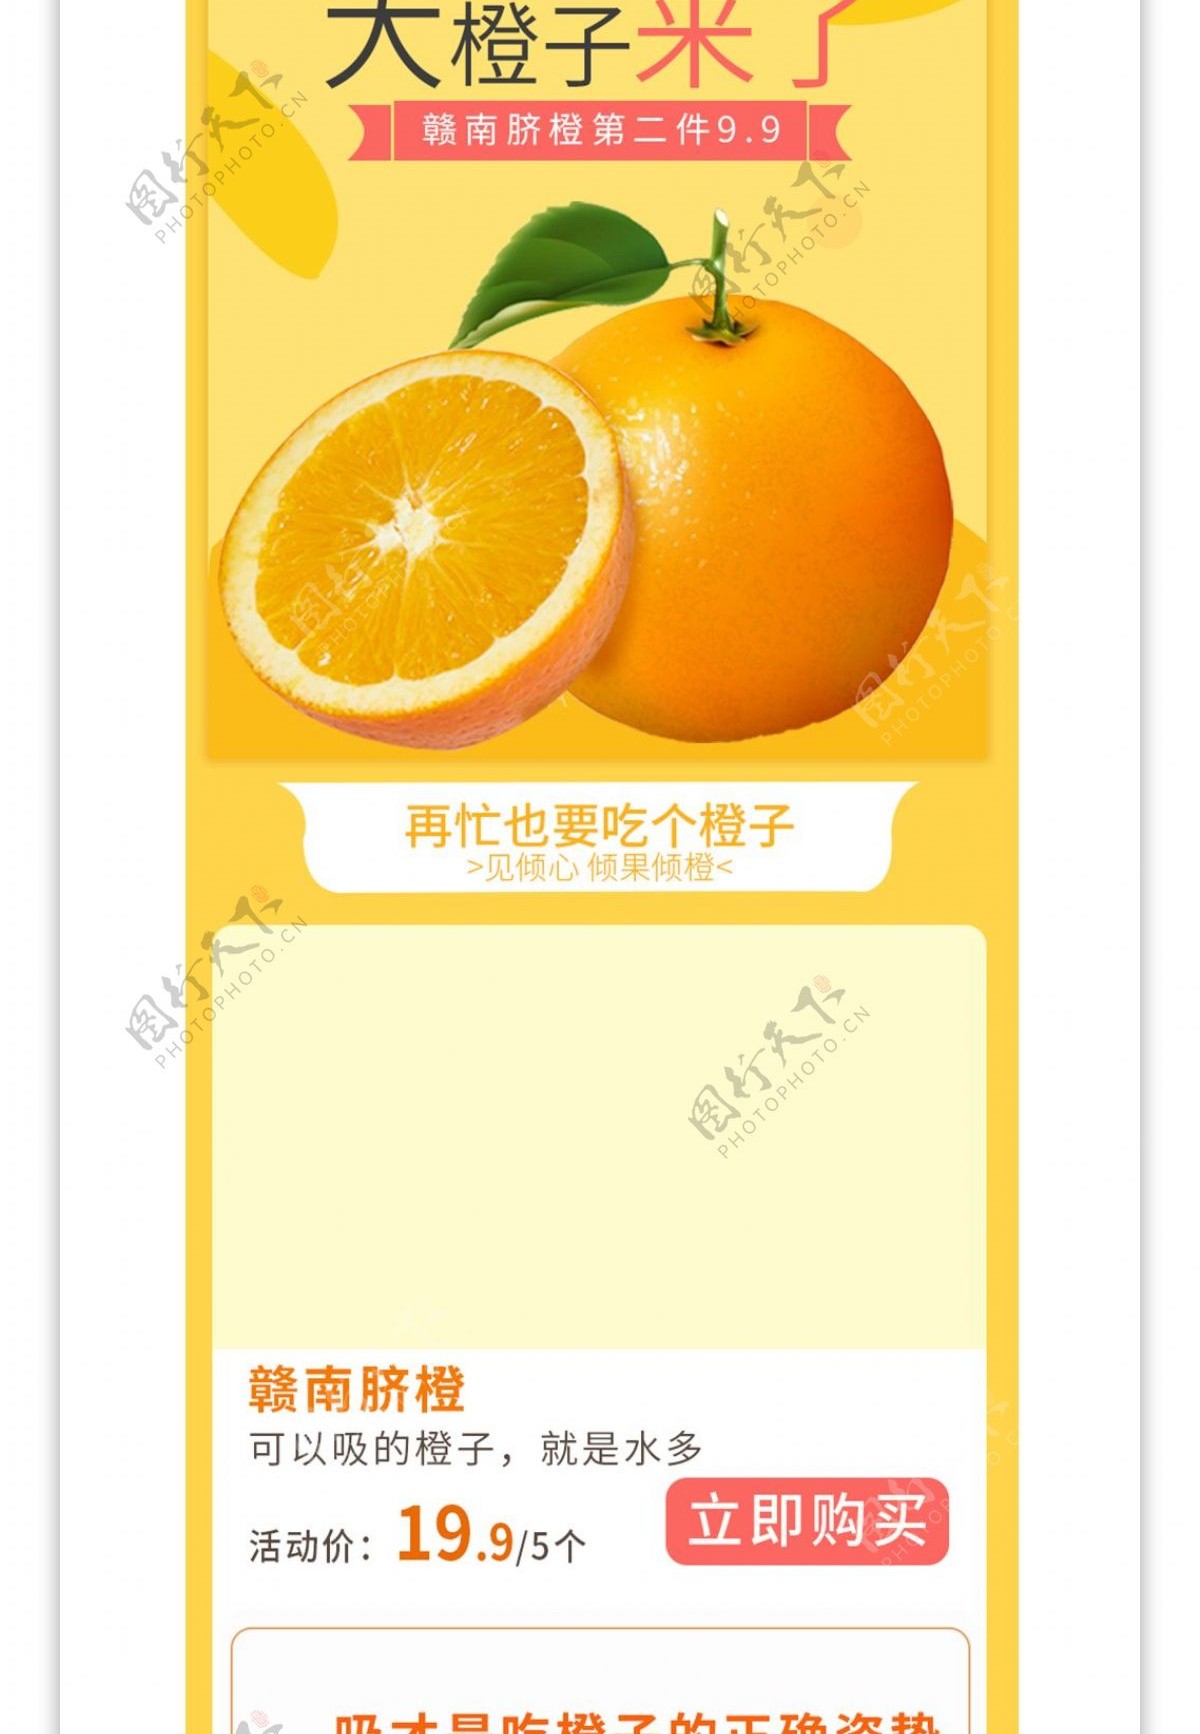 电商淘宝水果生鲜橙子详情页